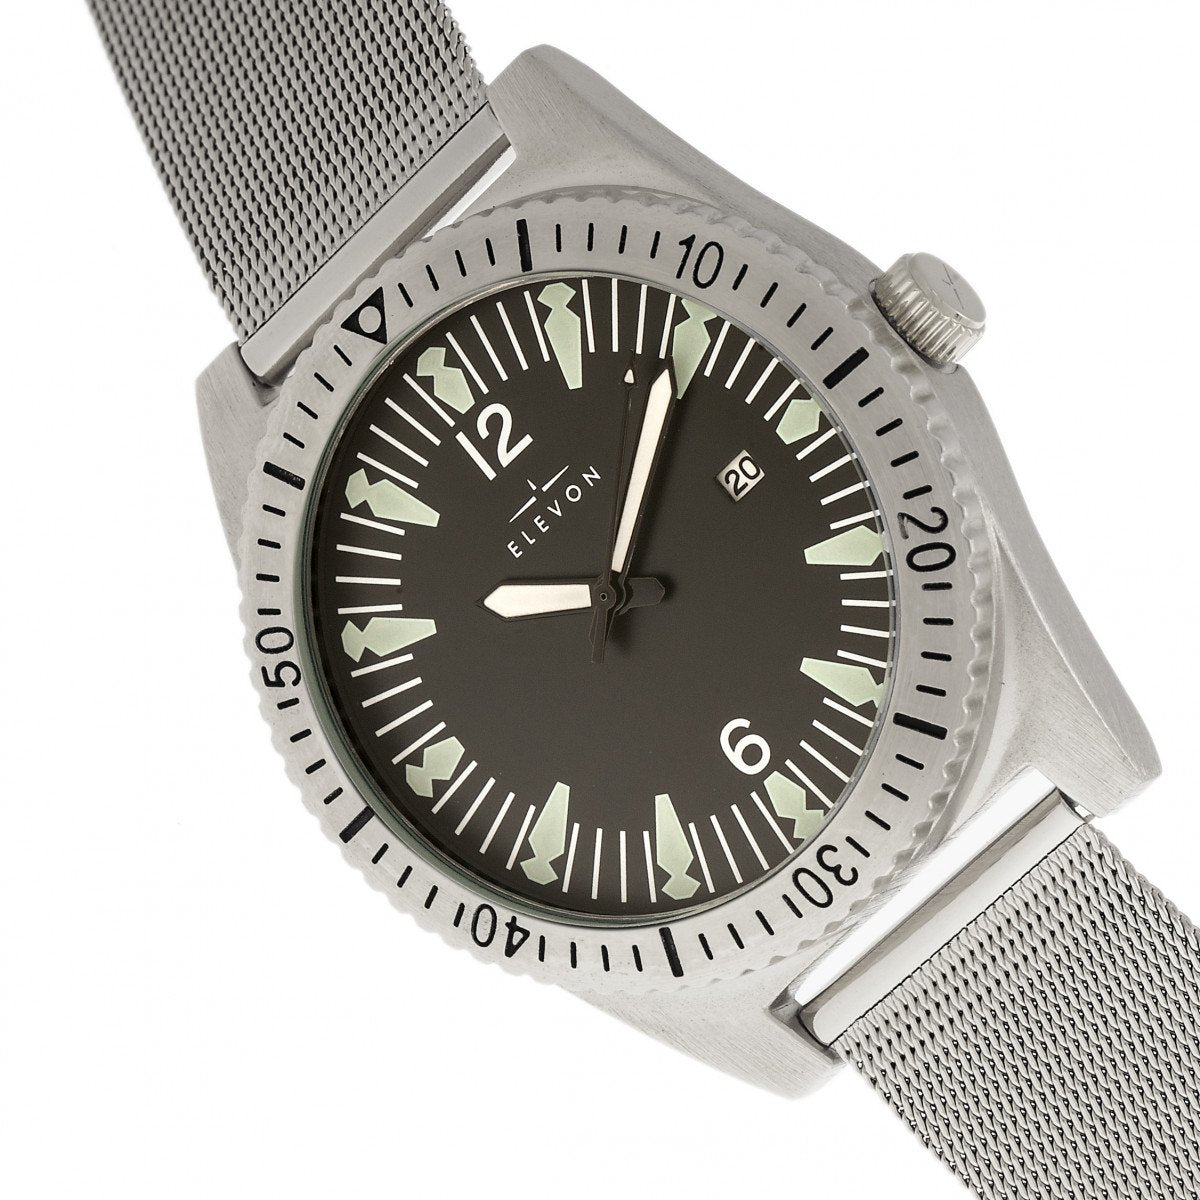 Elevon Jeppesen Bracelet Watch w/Date - Silver - ELE114-1